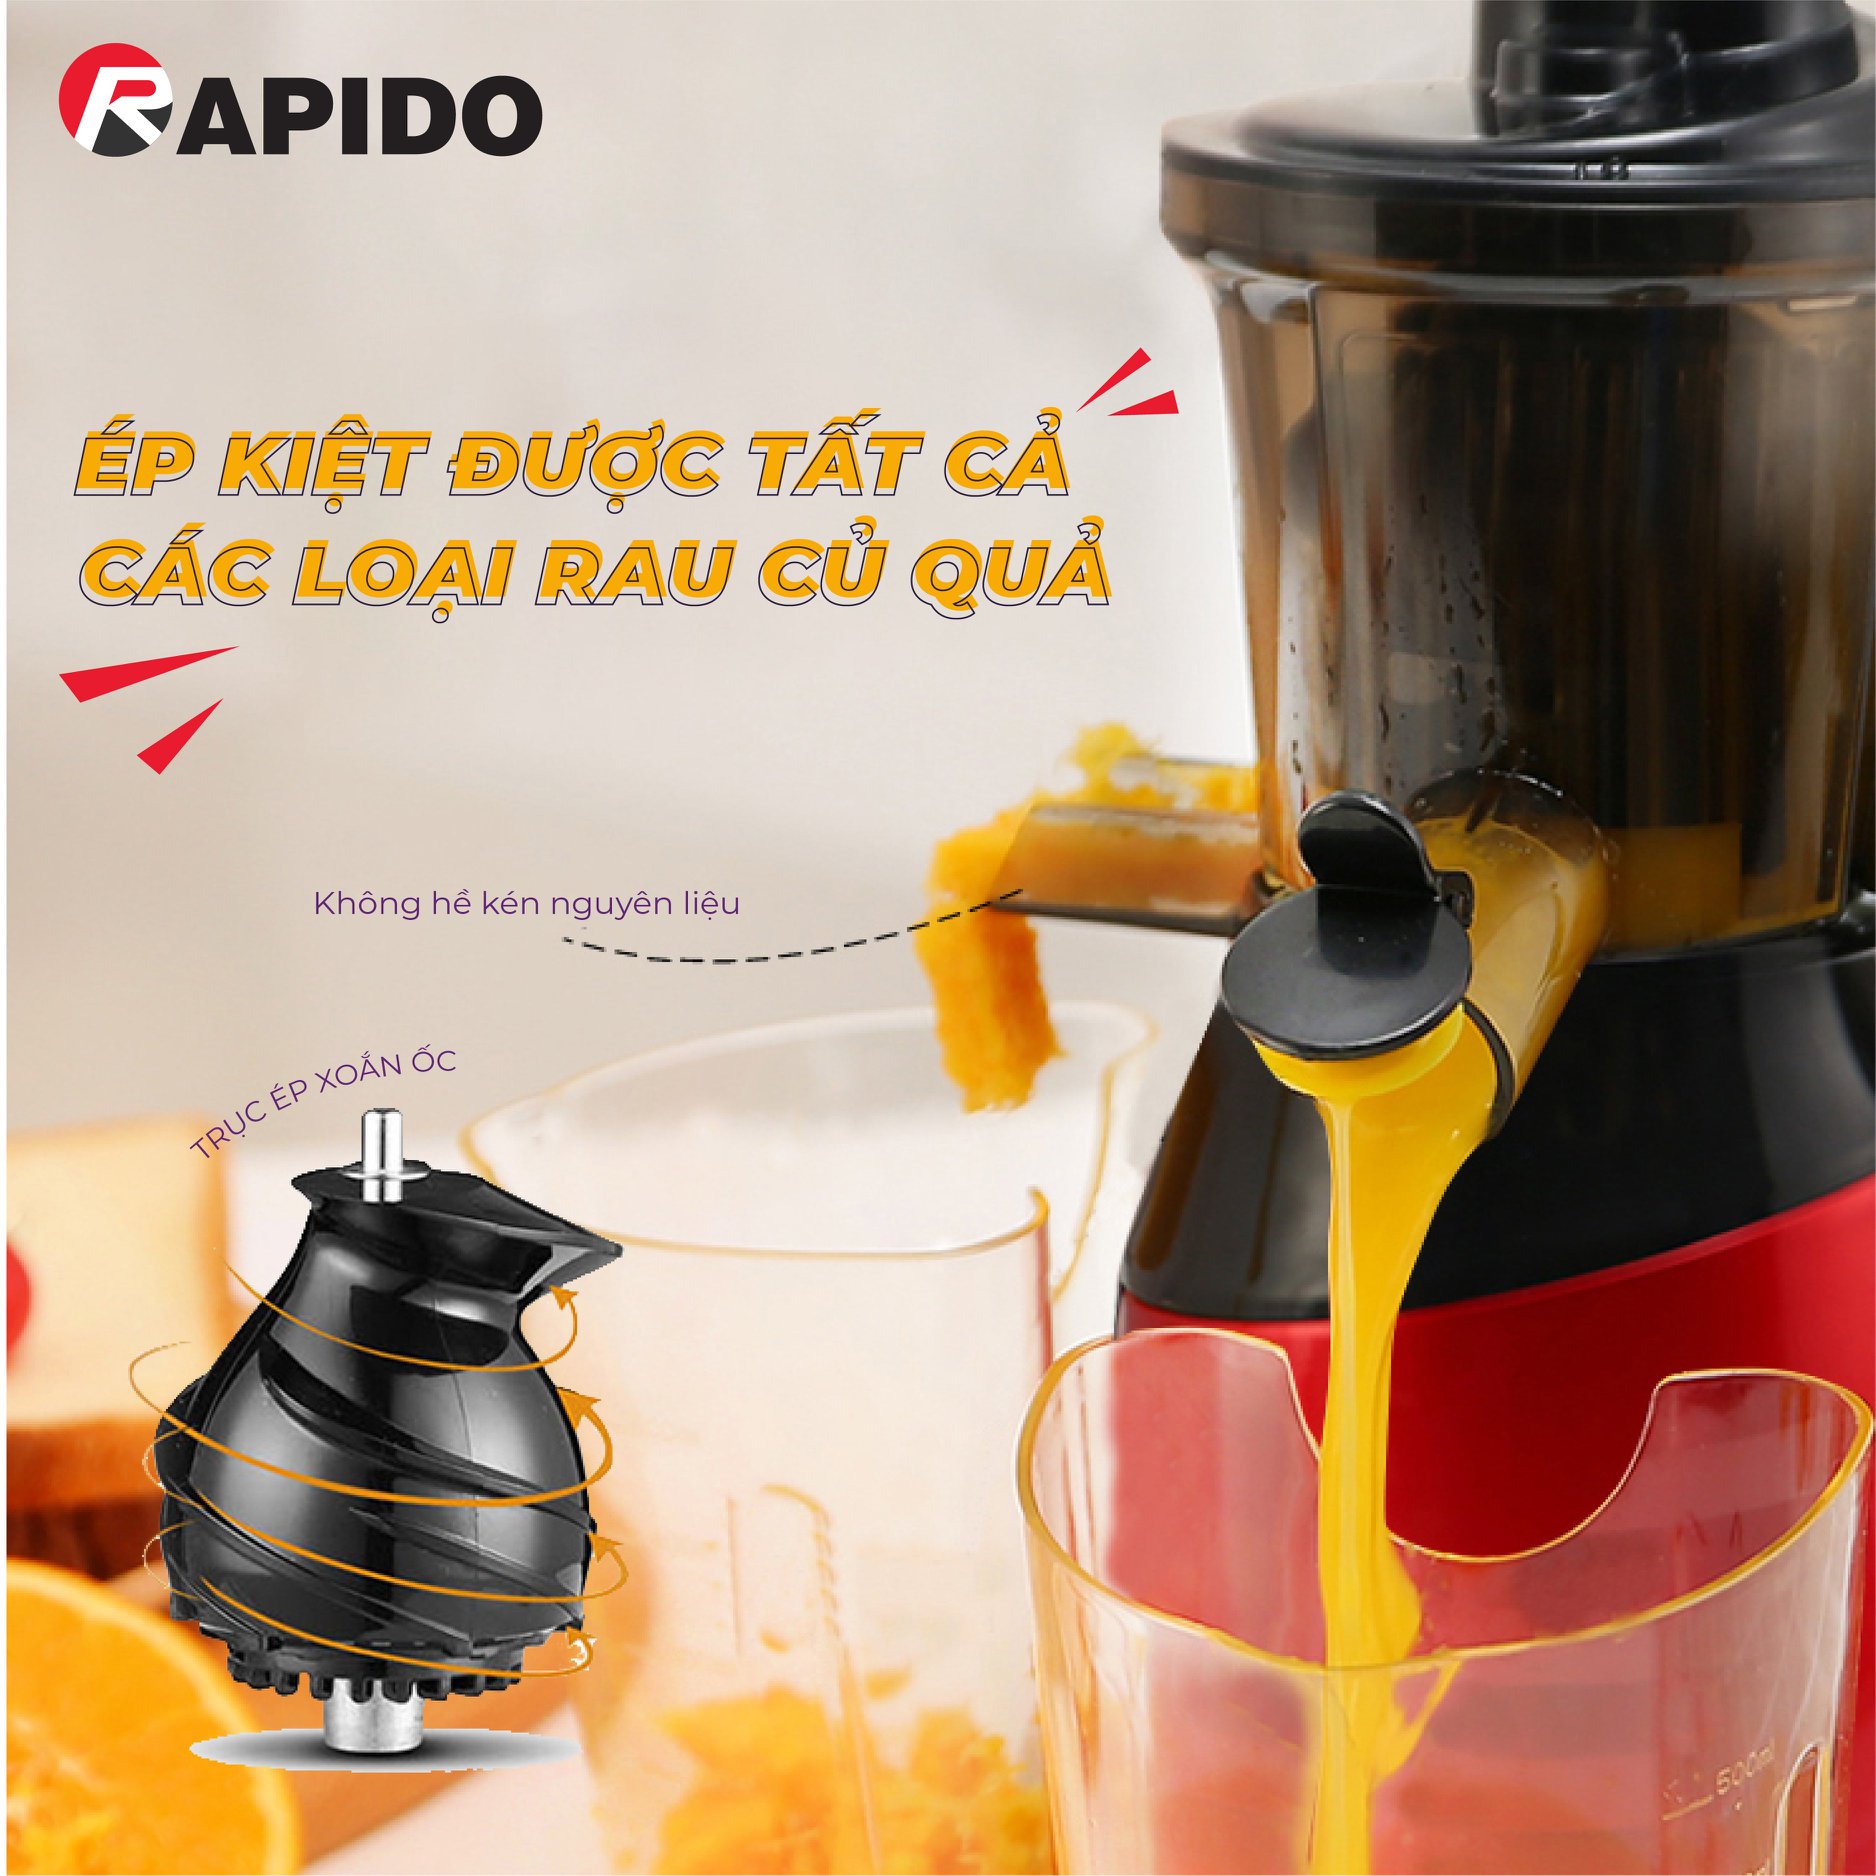 Máy ép chậm Rapido RSJ150 có thể ép kiệt được nhiều loại rau củ quả mà các máy ép khác khó có thể làm được.,